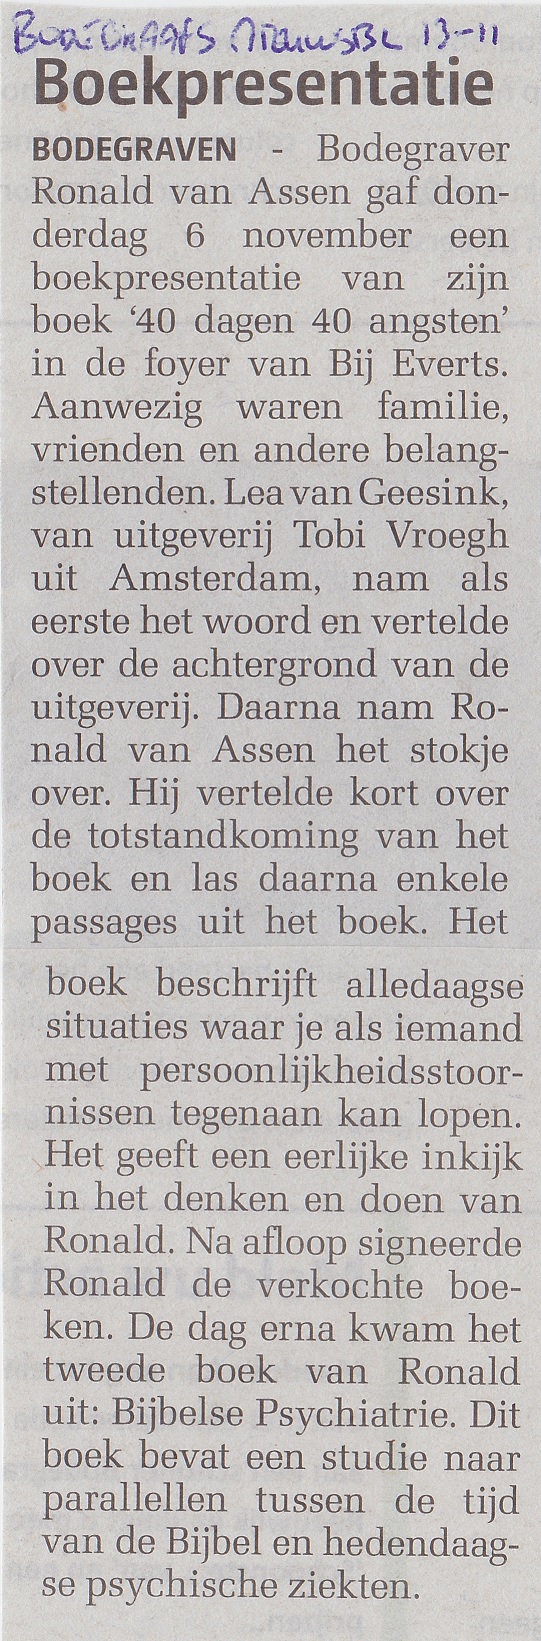 Bodegraafse Nieuwsblad 13-11-2014